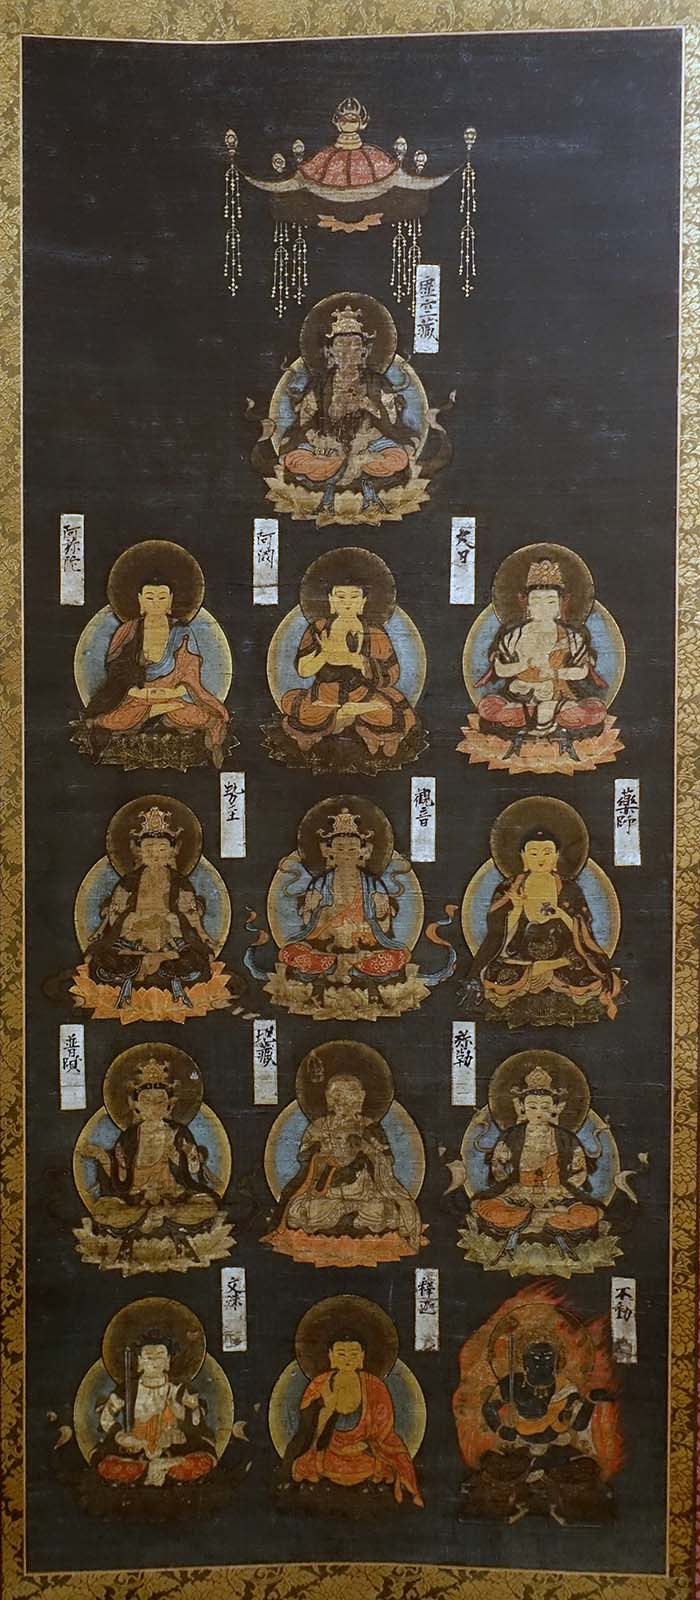 みんなの知識 ちょっと便利帳 日本 にほん の仏教 十三仏真言